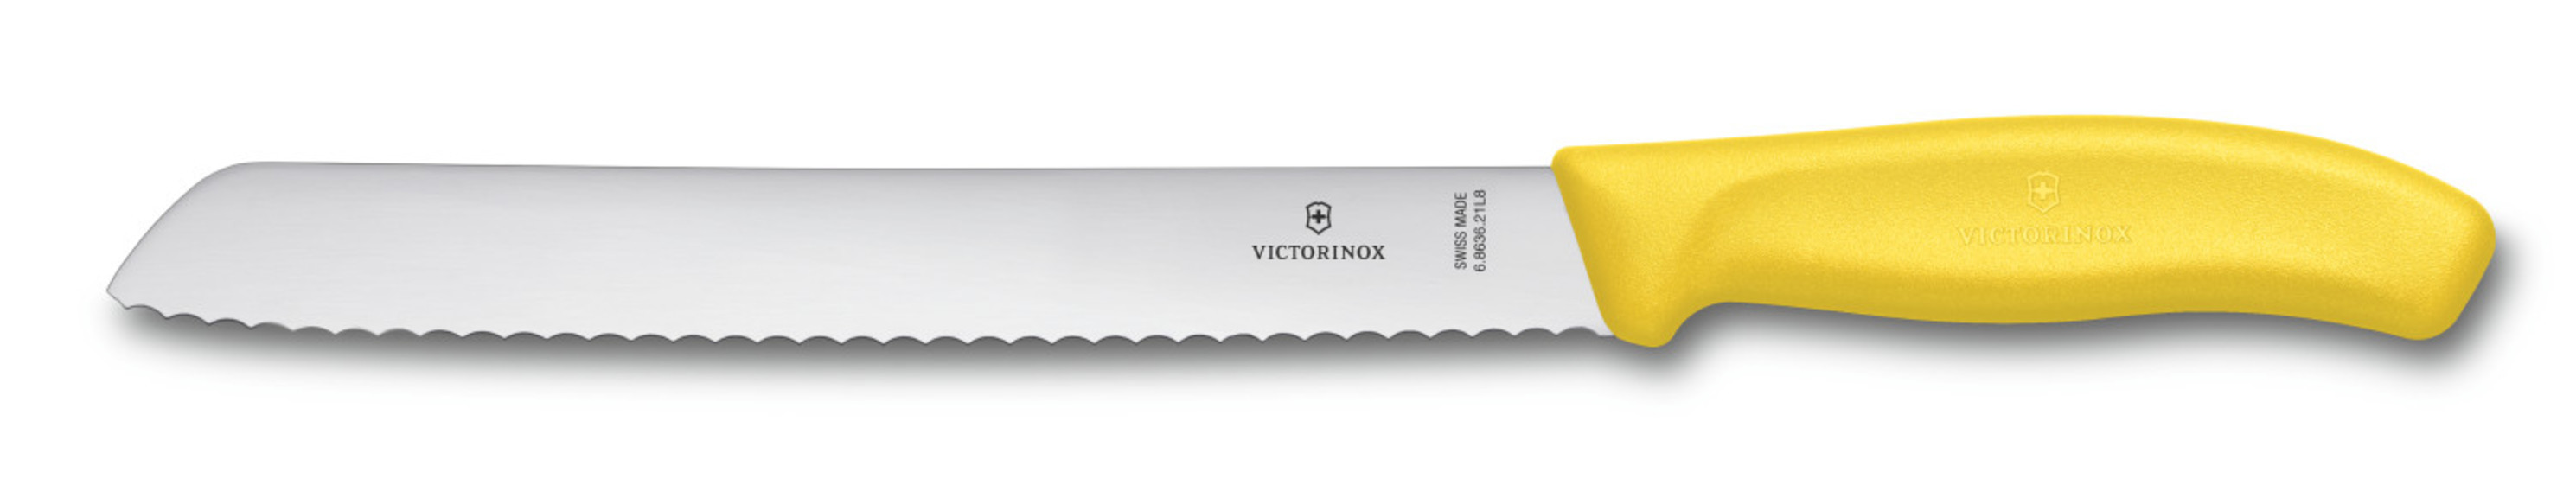 Нож для хлеба Victorinox SwissClassic, волн. лезвие, 21 cм